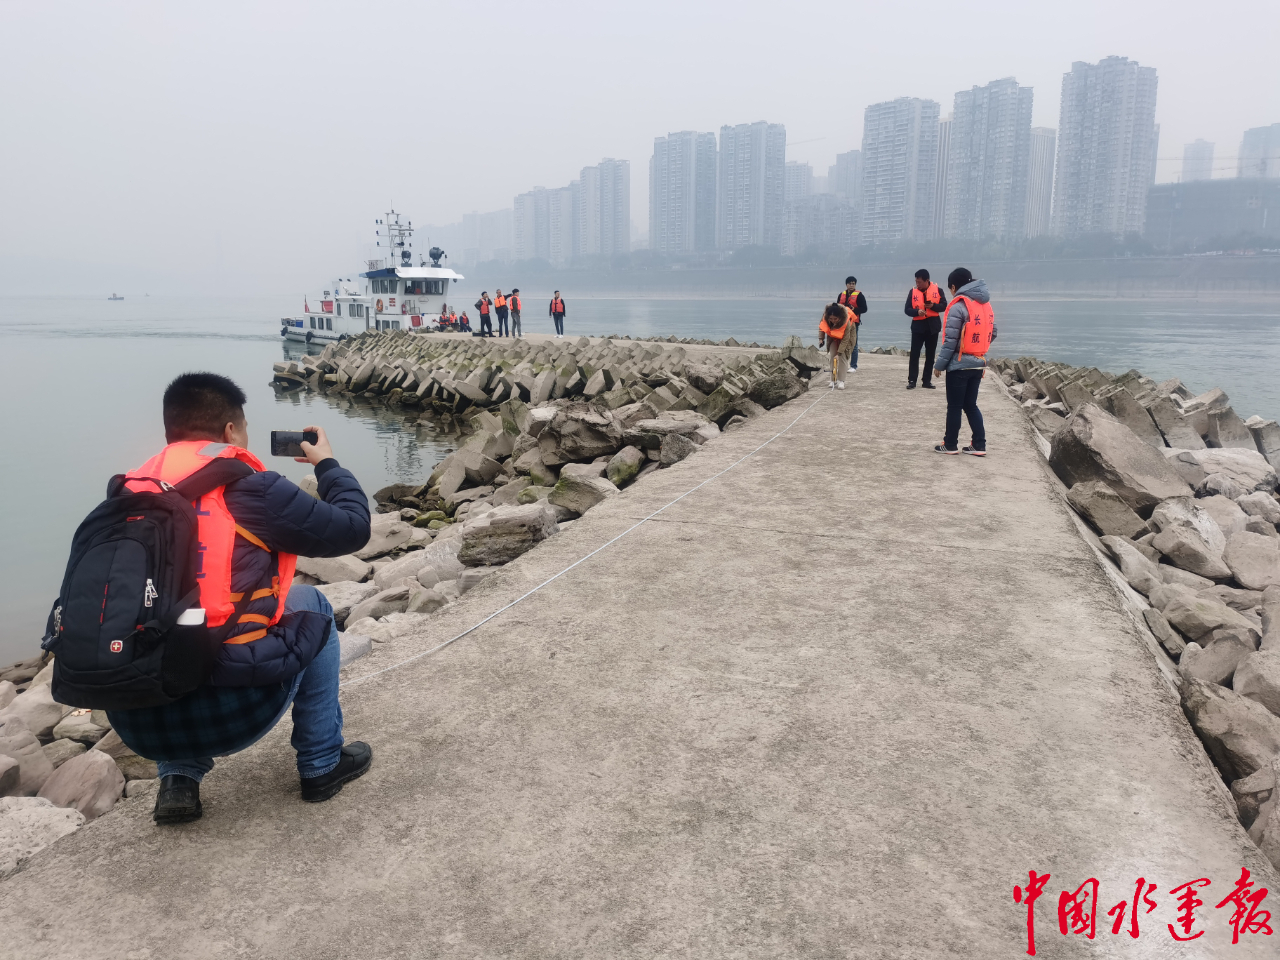 长江重庆航道局全力护航跨年焰火表演 - 企业 - 中工网